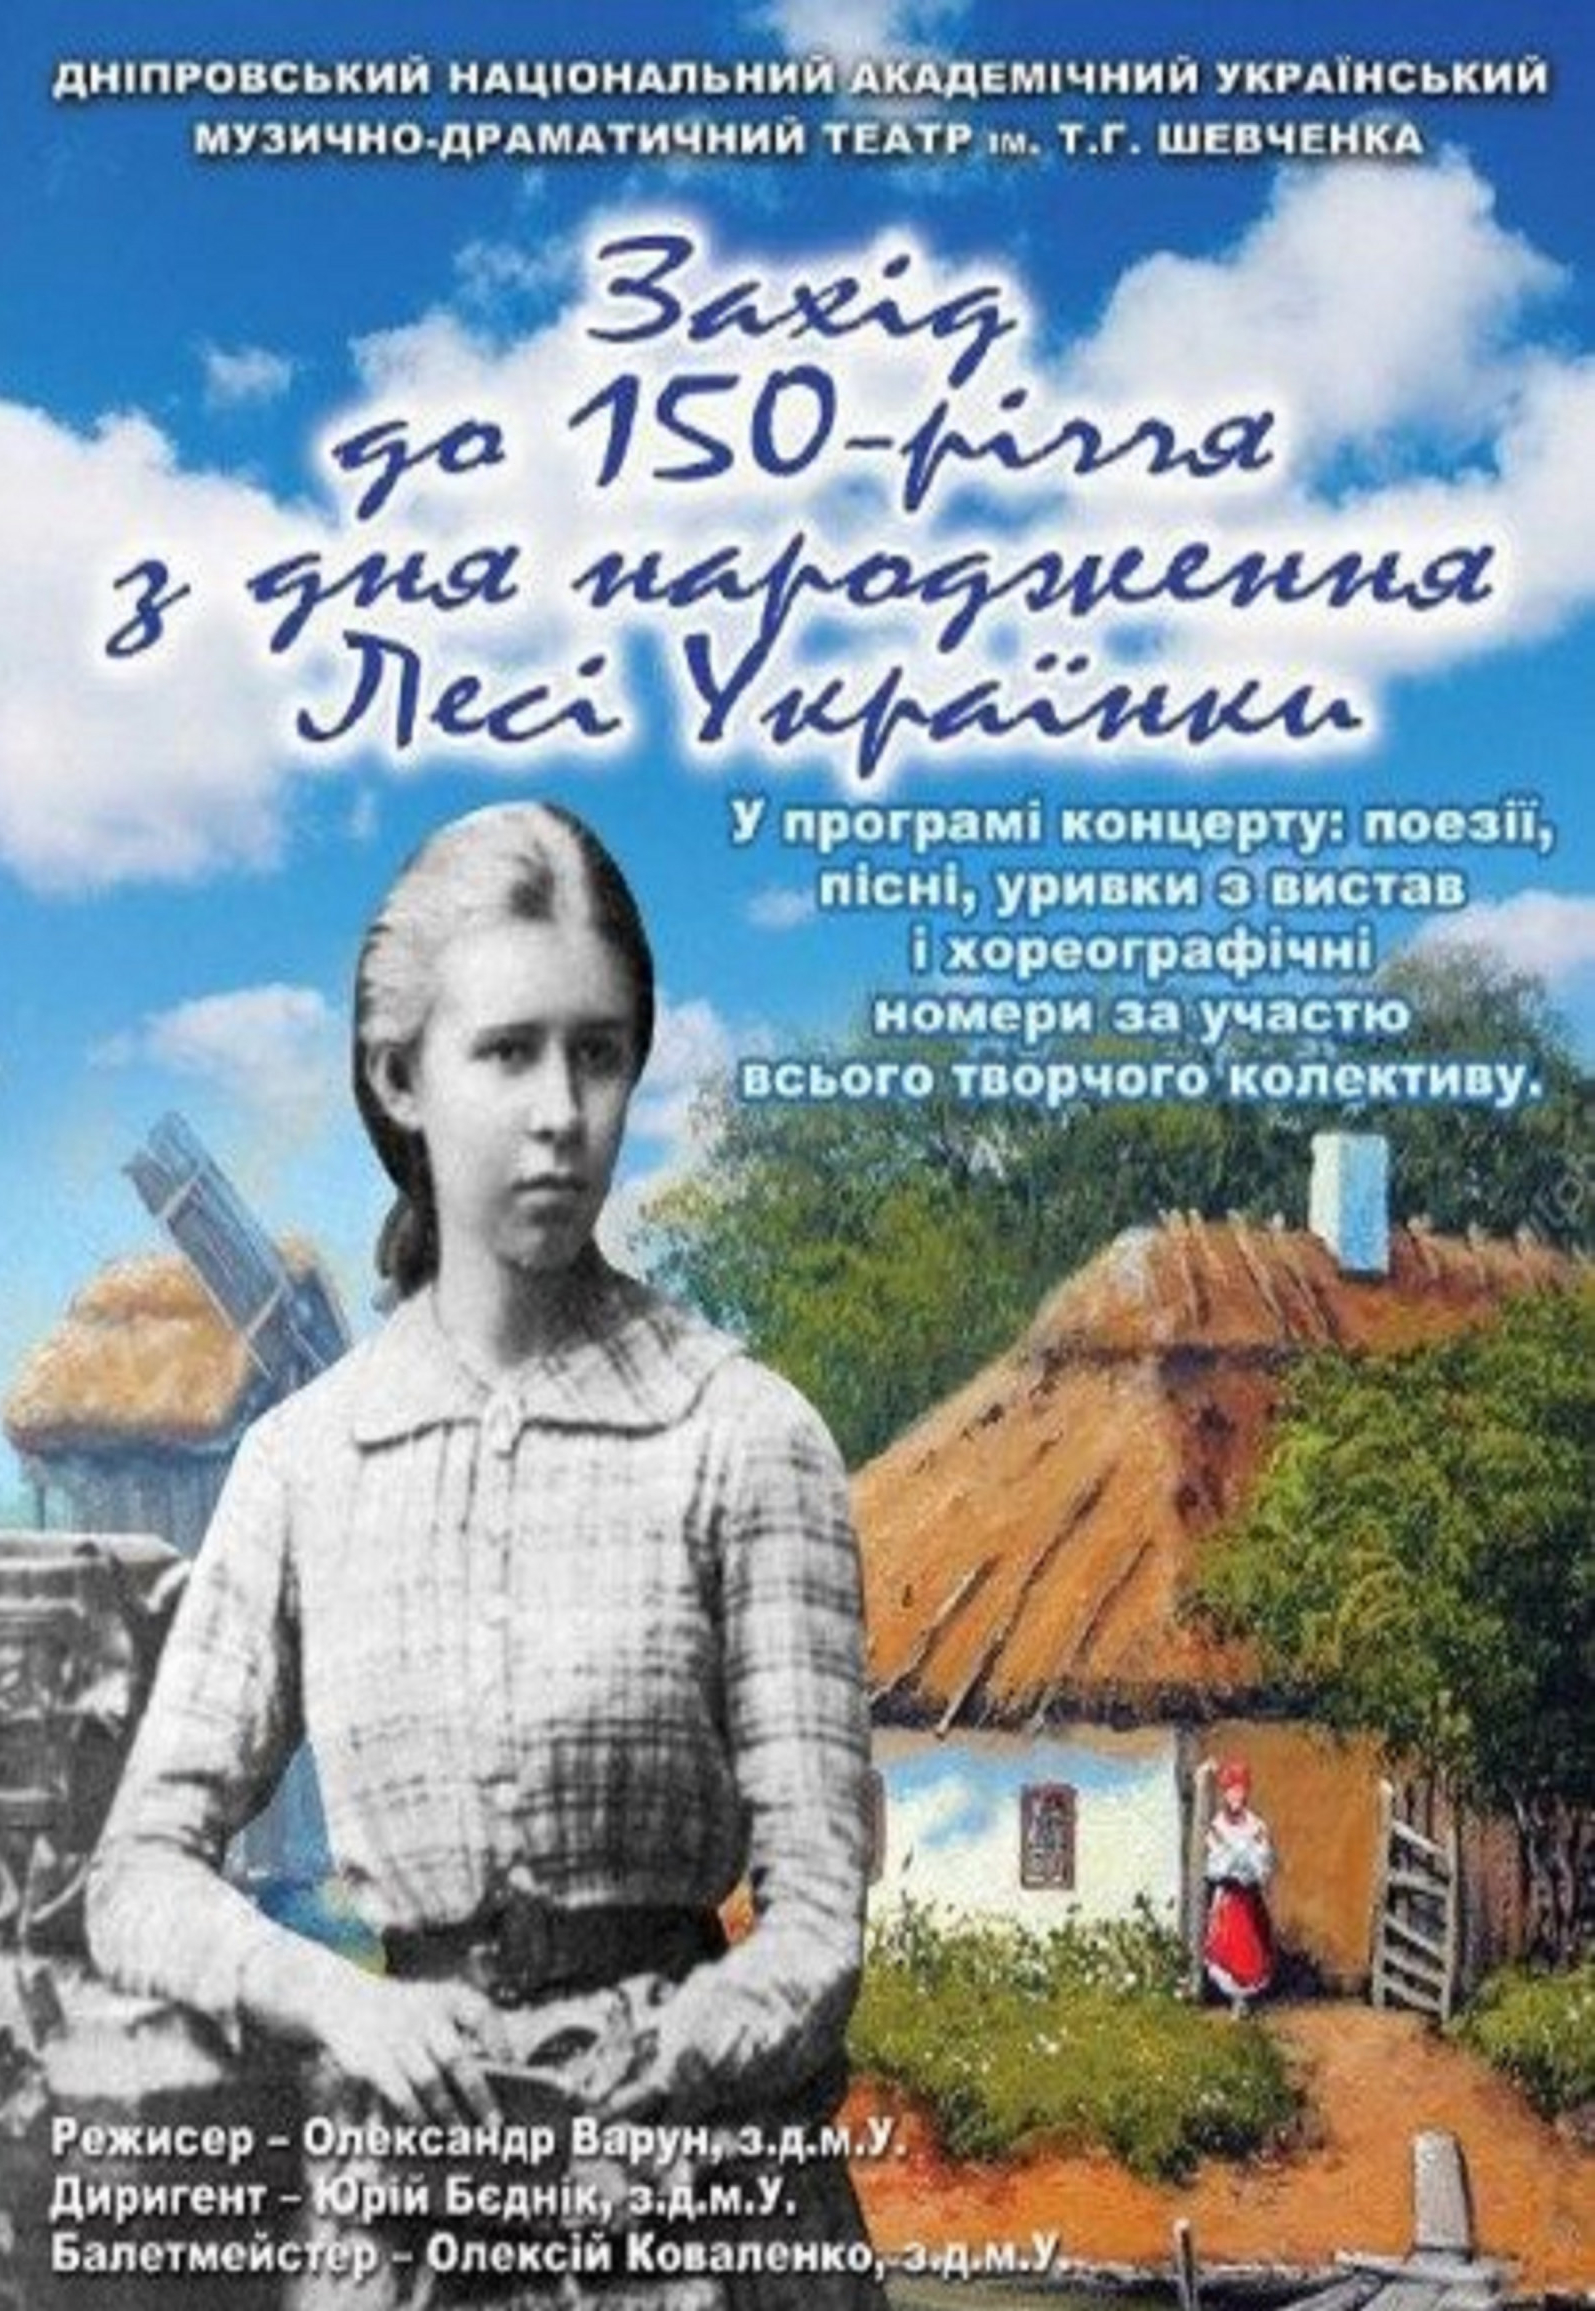 Мероприятие ко дню памяти Леси Украинки Днепр, 25.02.2021, цена. Афиша Днепра